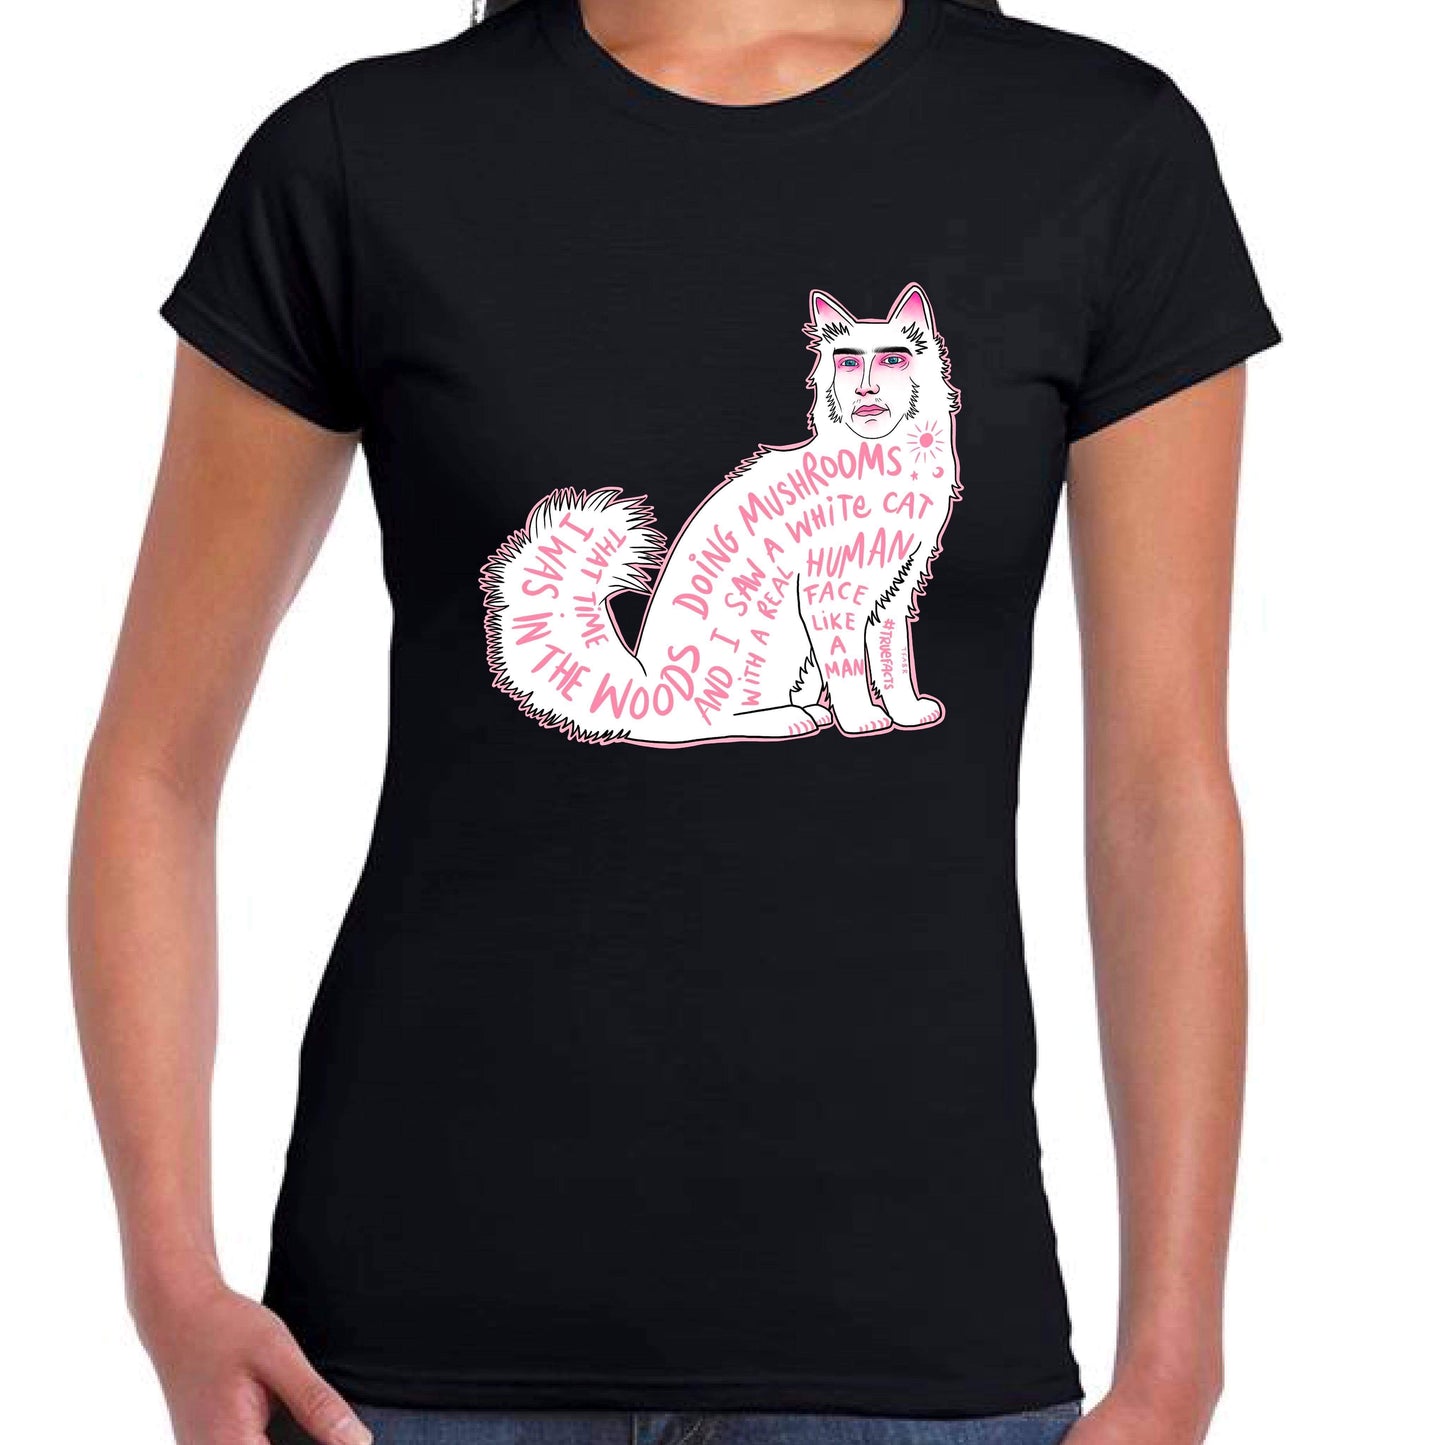 CatFace Ladyfit T-Shirt